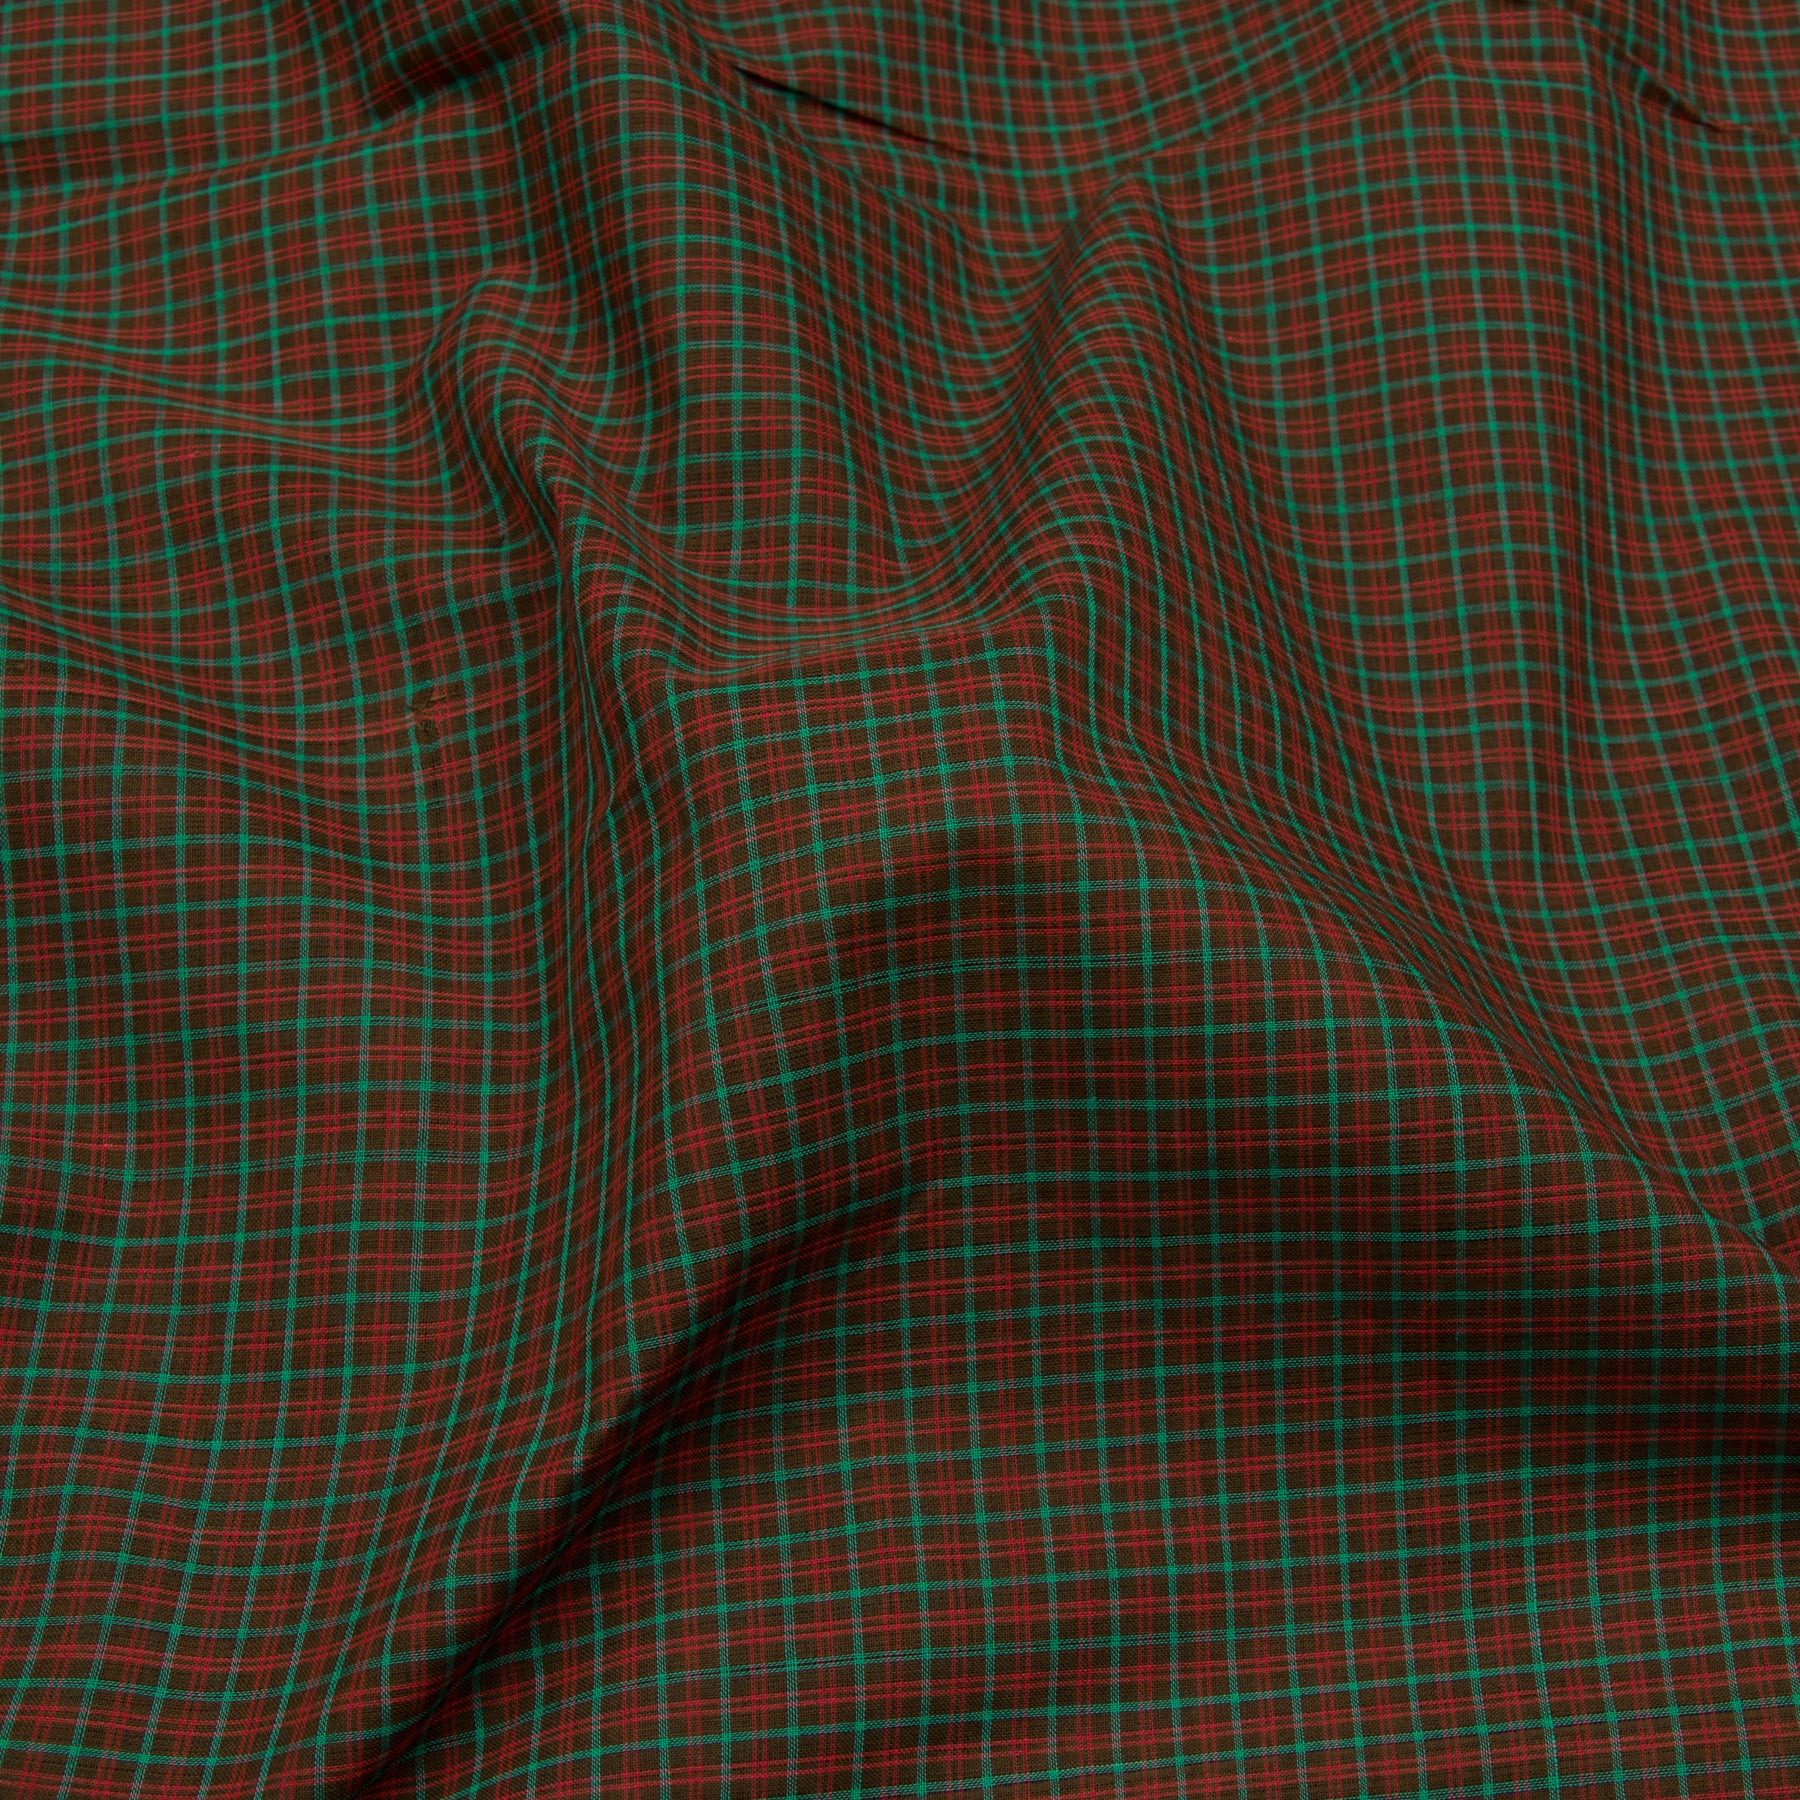 Kanakavalli Mangalgiri Cotton Sari 23-261-HS003-04181 - Fabric View